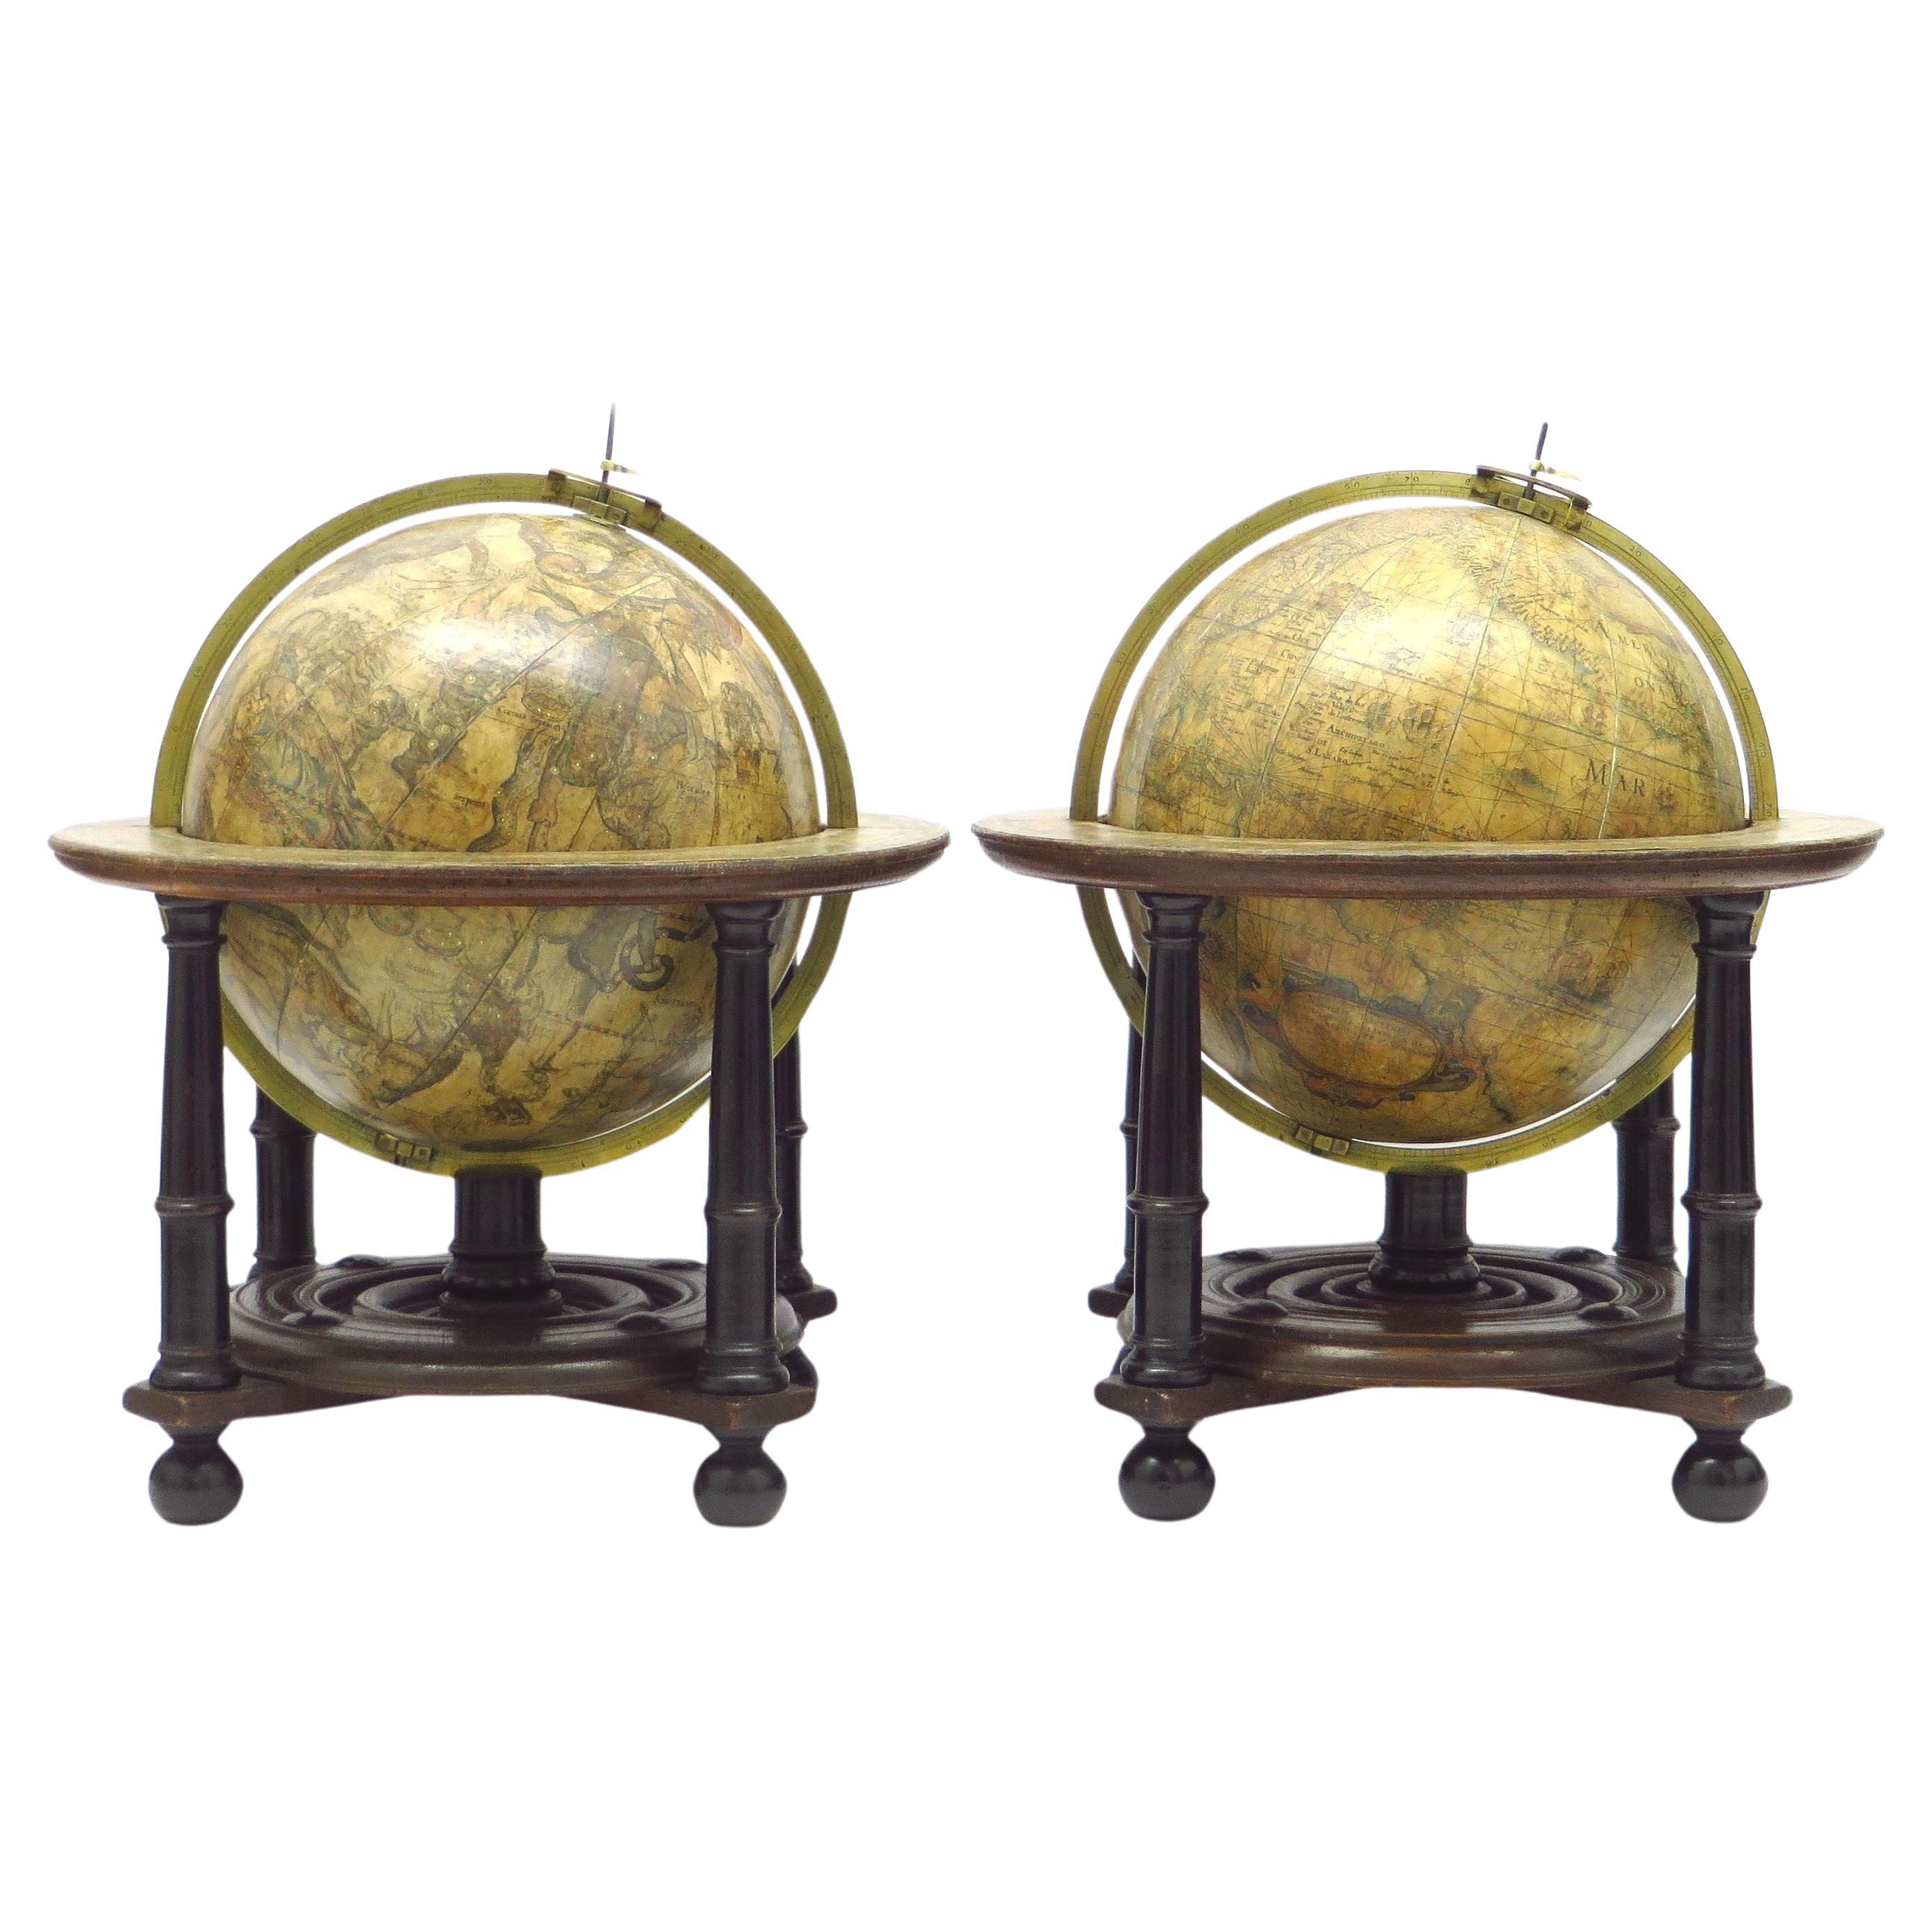         Une paire exceptionnelle de globes de table BLAEU